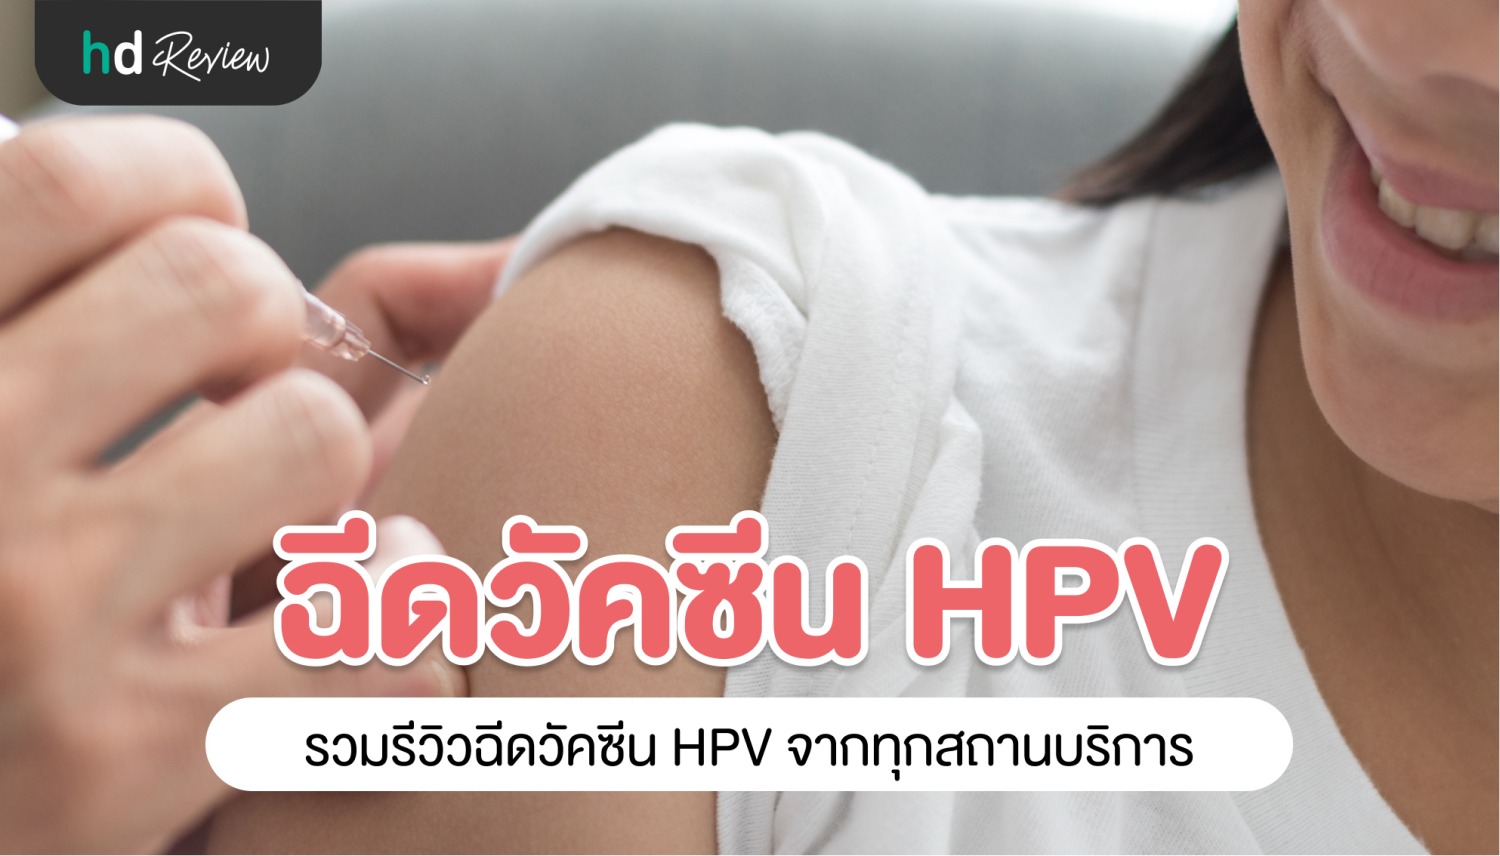 รวมรีวิวฉีดวัคซีน HPV ป้องกันมะเร็งปากมดลูก